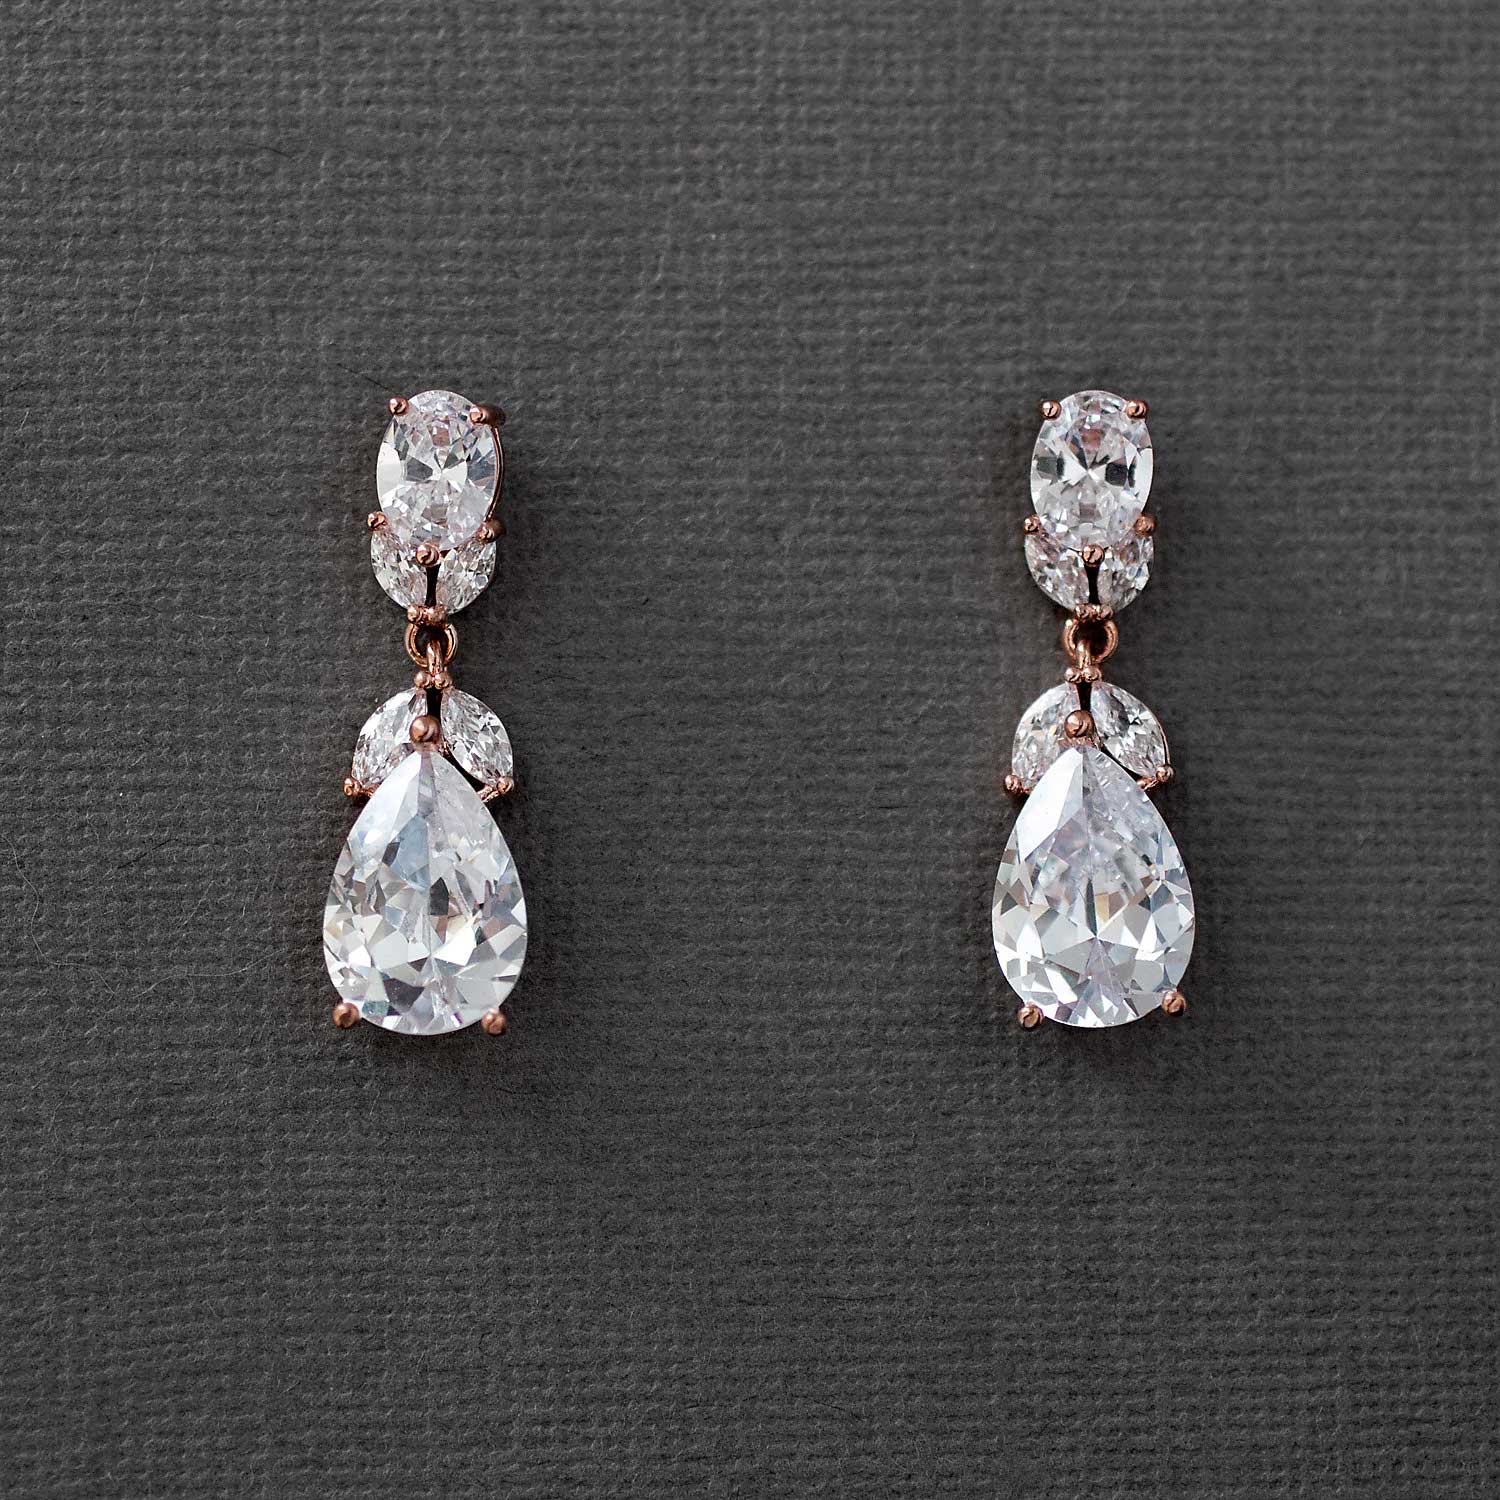 Classic Wedding CZ Earrings Teardrop and Oval Jewels - Cassandra Lynne